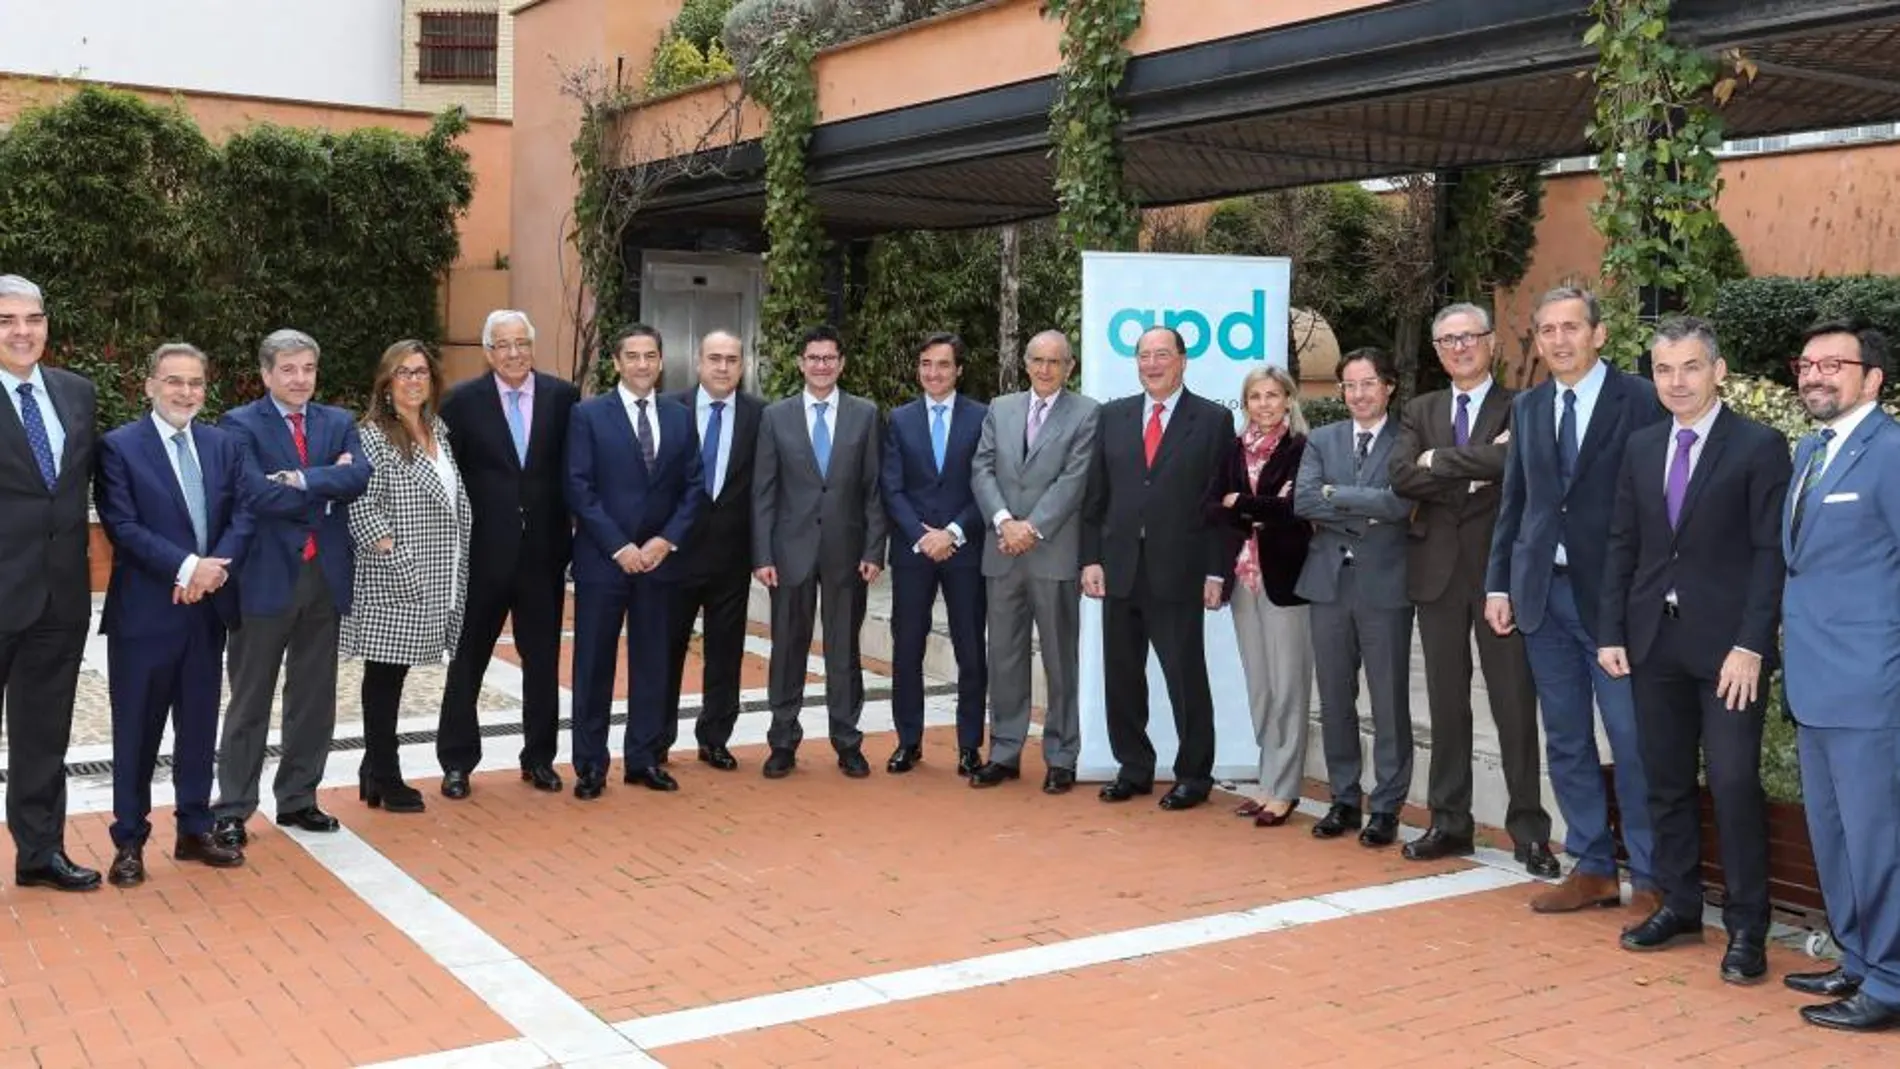 Foto de familia del nuevo Consejo de la Asociación para el Progreso de la Dirección en Castilla y León, que preside Carlos Moro